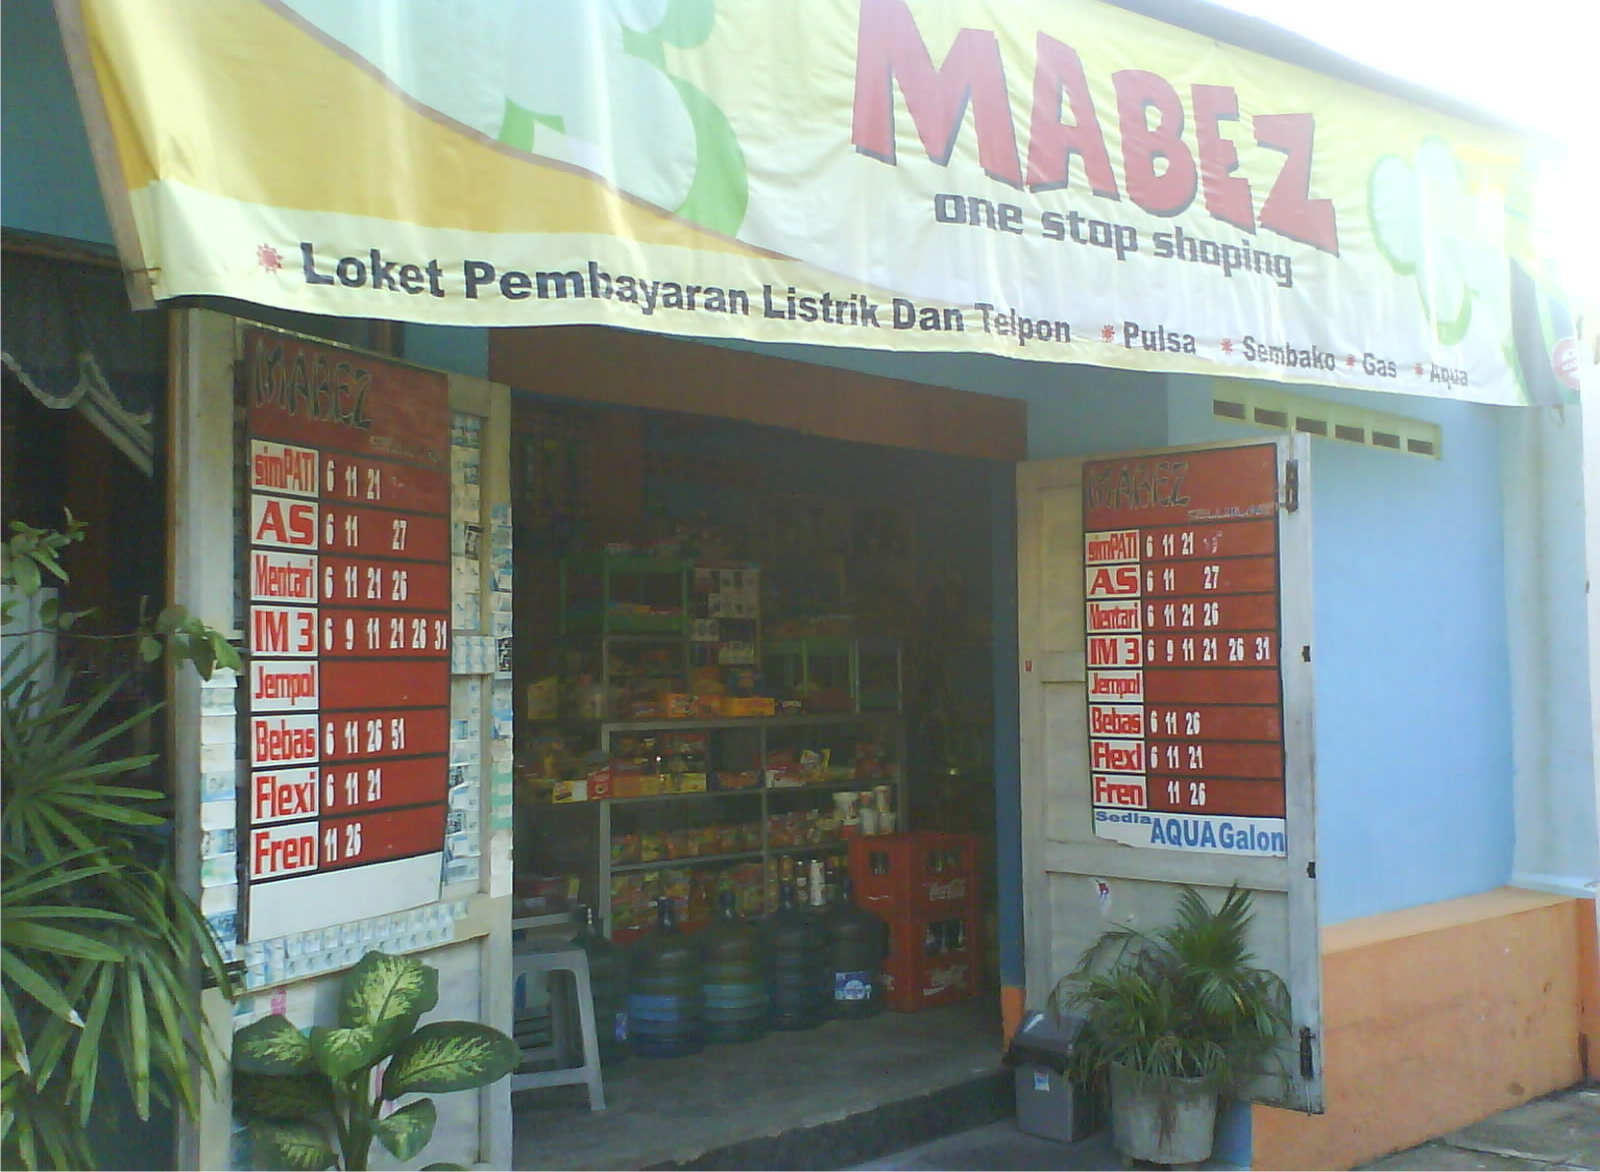 GangsalNet: Mabez Shop